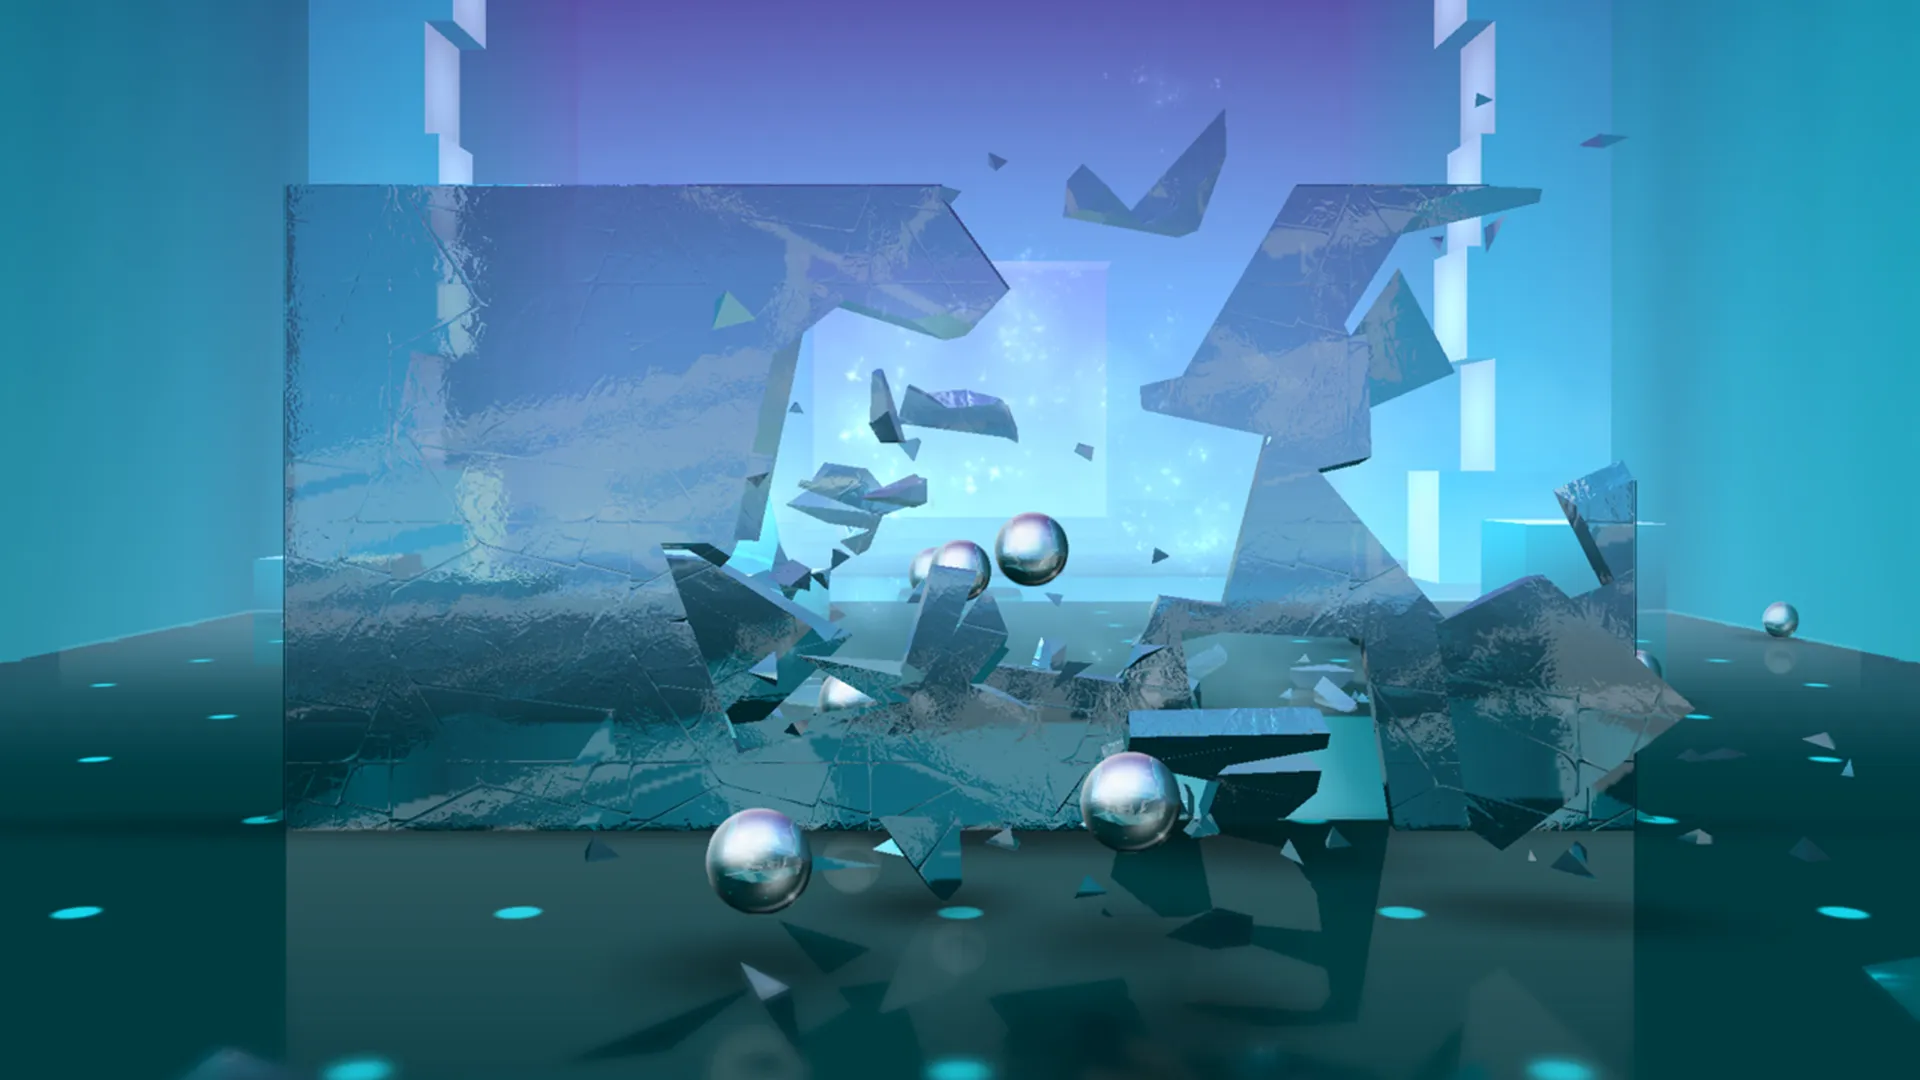 محیط بازی Smash Hit که گوی فلزی در حال خورد کردن شیشه را به نمایش می گذارد